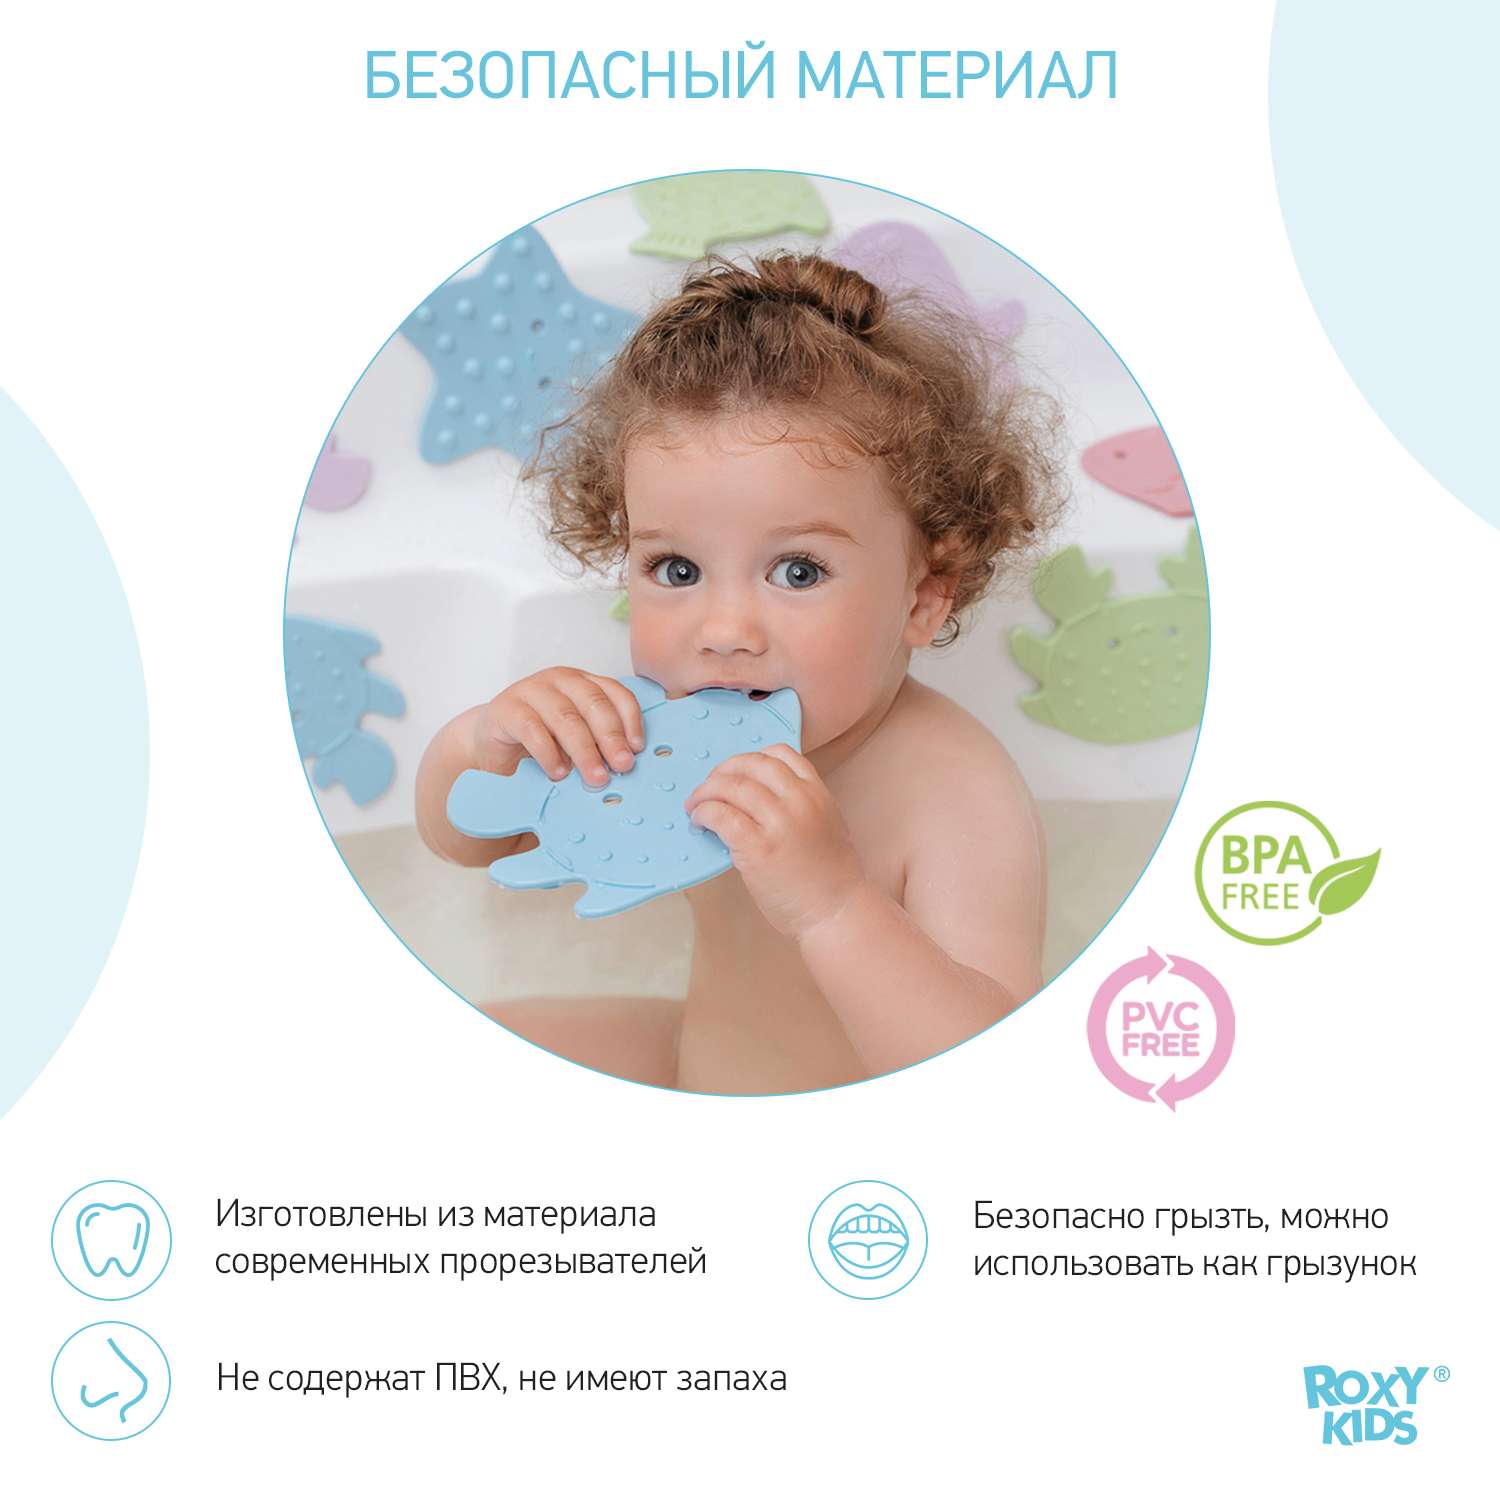 Мини-коврики детские ROXY-KIDS для ванной противоскользящие Sea animals 12 шт цвета в ассортименте - фото 6